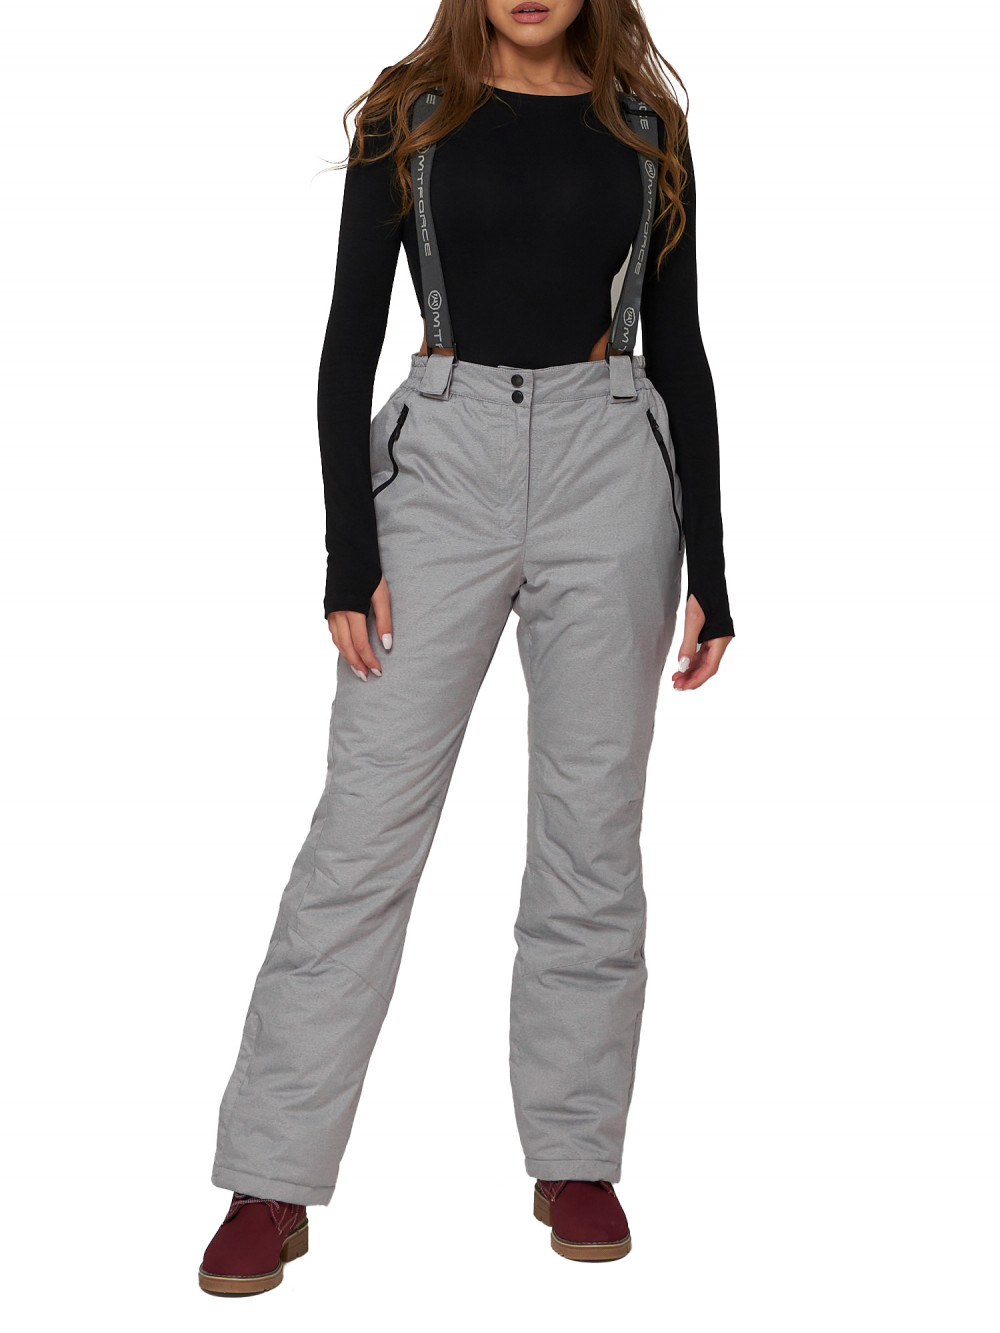 Полукомбинезон брюки горнолыжные женские AD2221Sr серого цвета, 50